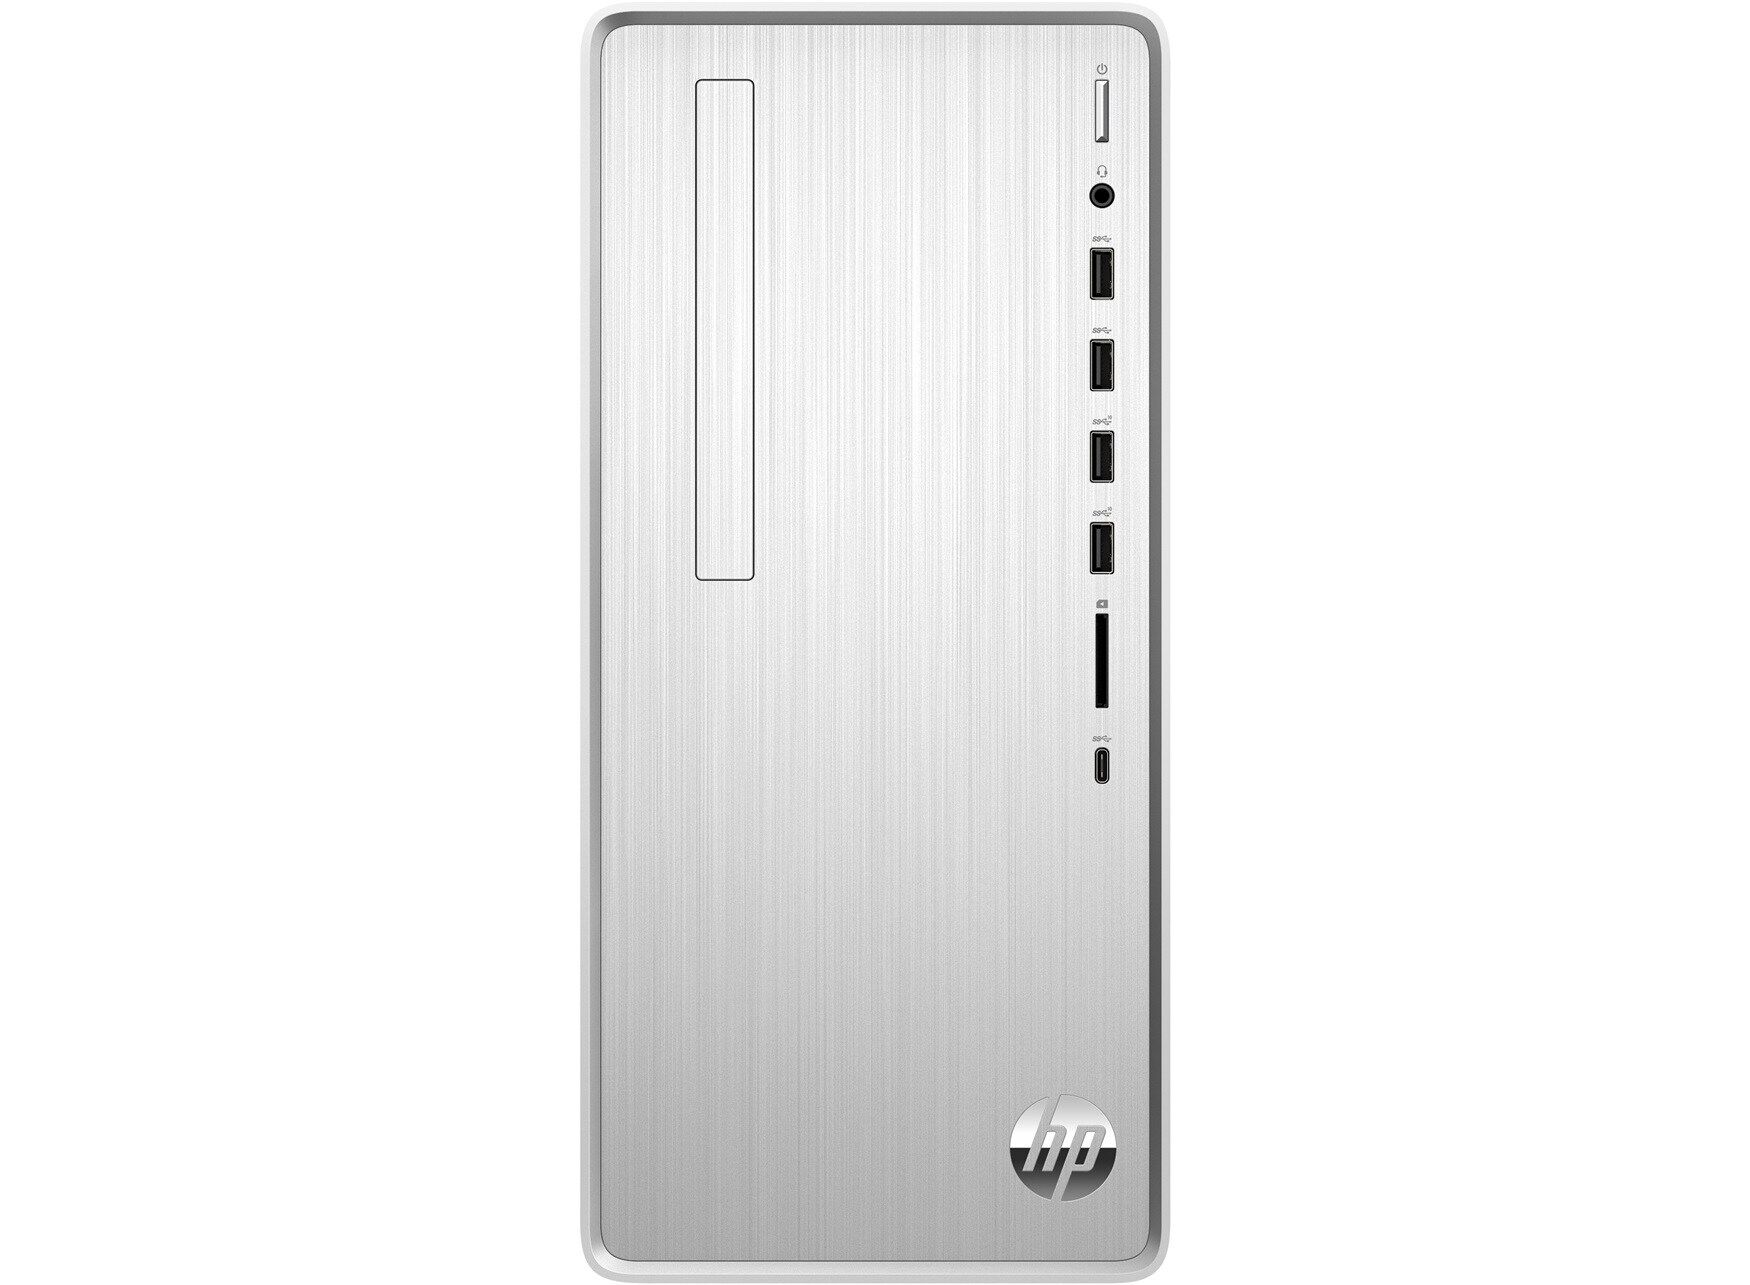 HP Pavilion Desktop TP01-1704ng Bundle PC